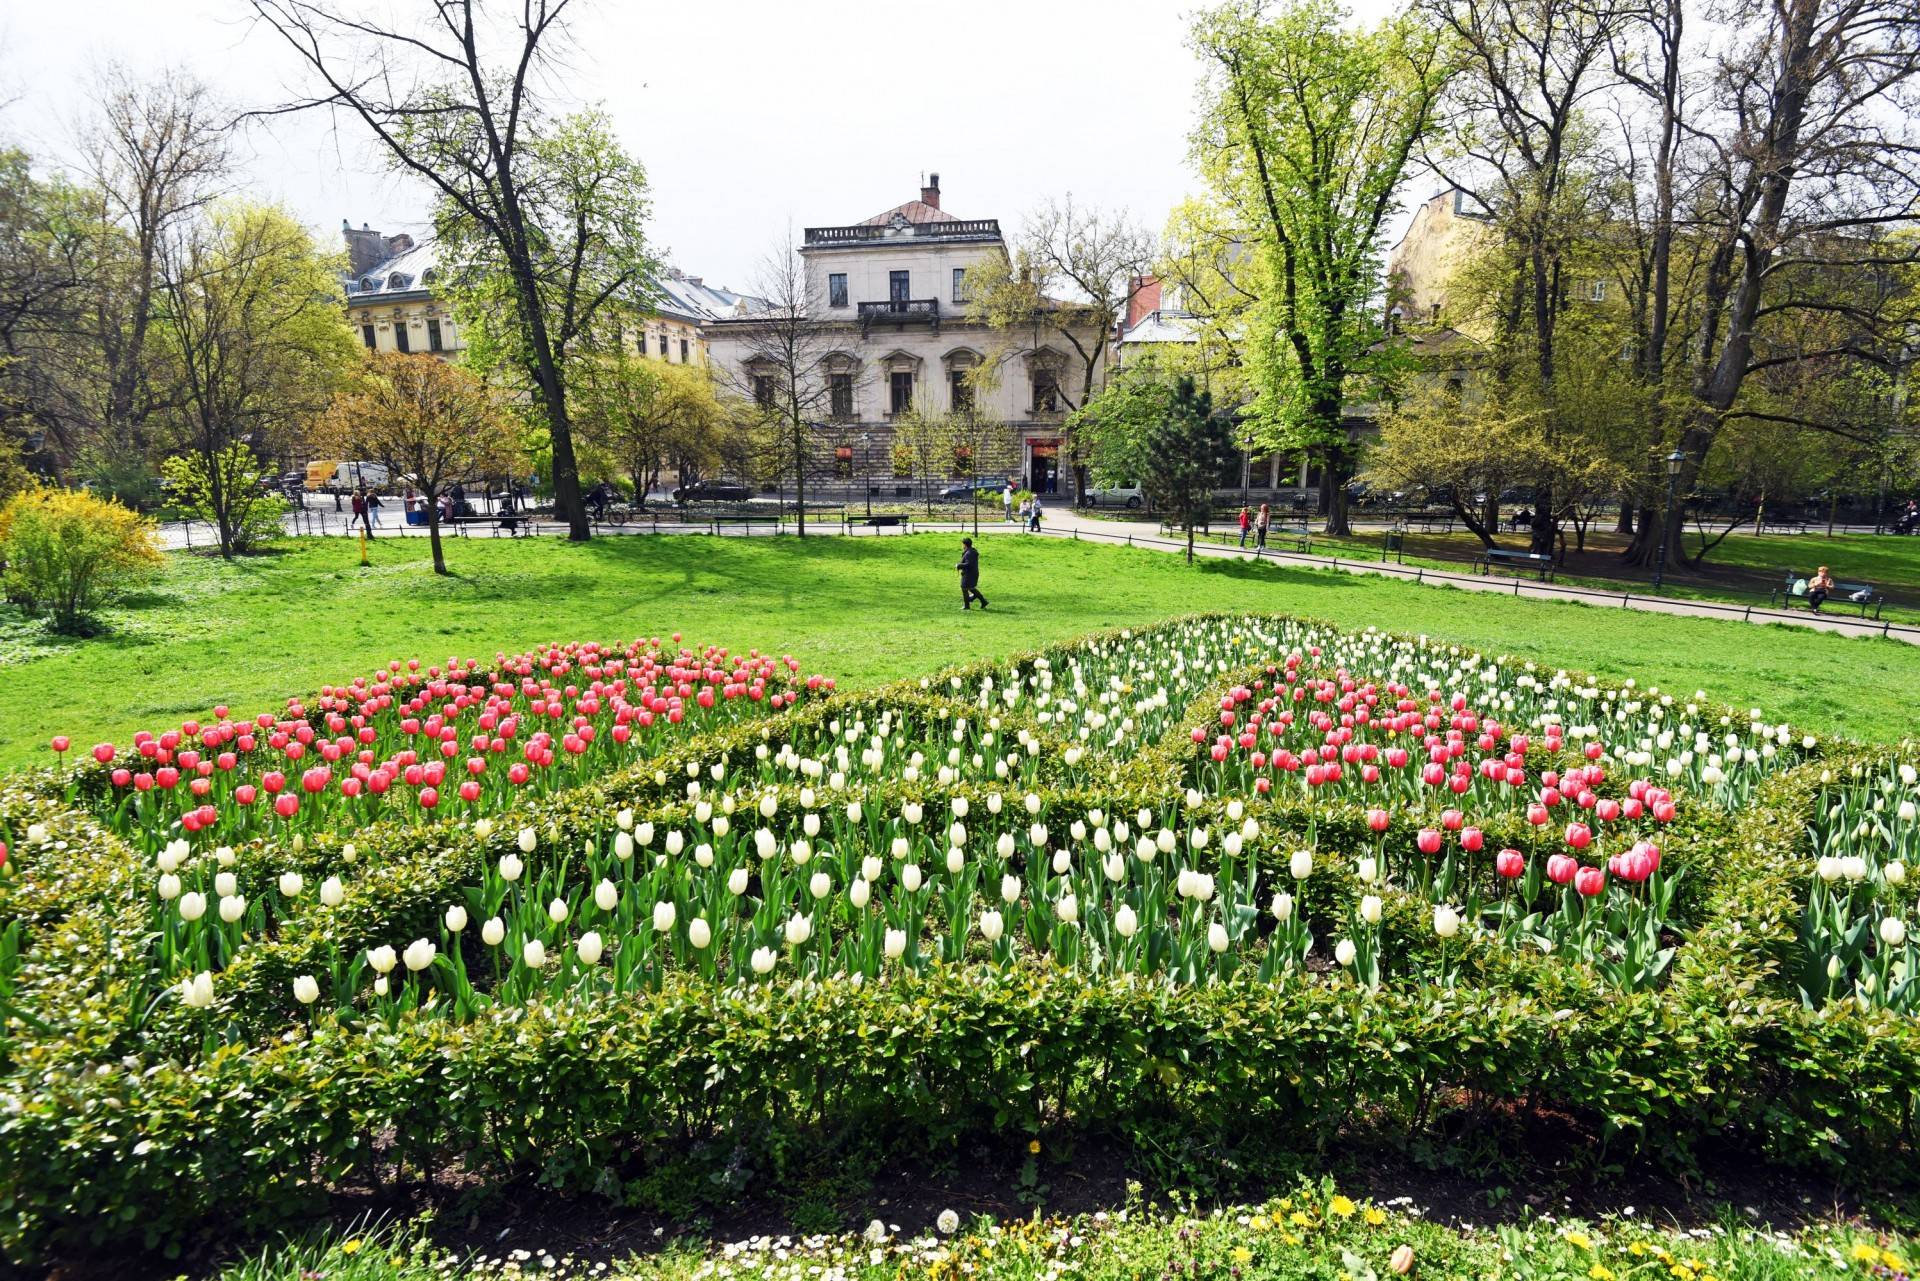 Tulipany "Agata Kornhauser-Duda" do Krakowa jeszcze nie dotarły...